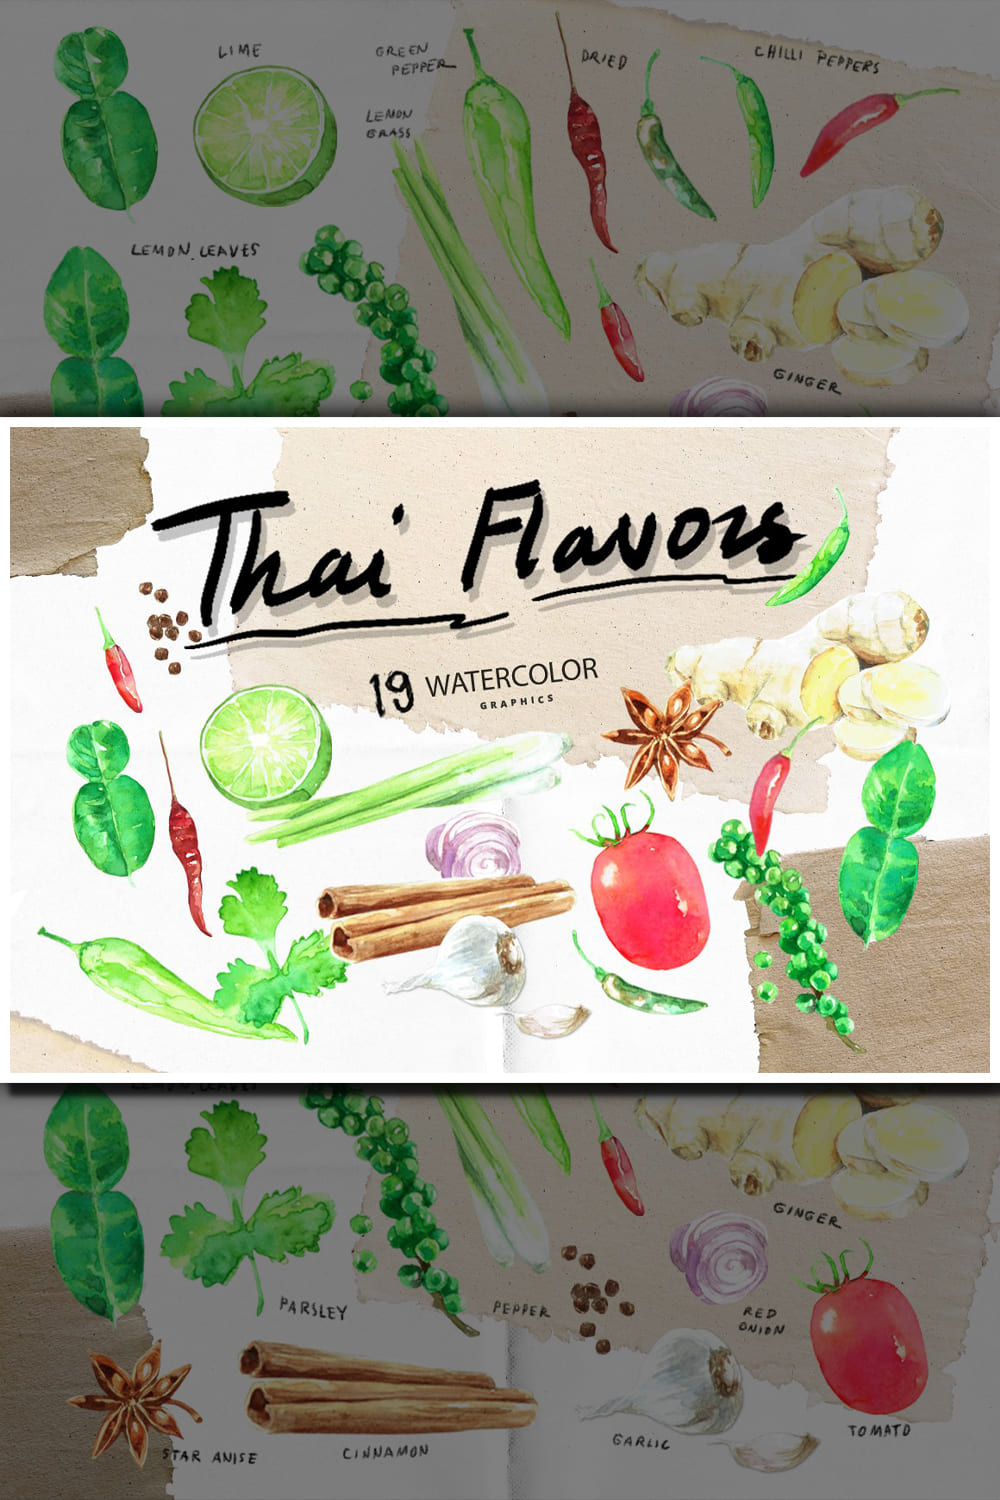 1776837 thai flavors watercolor graphic pinterest 1000 1500